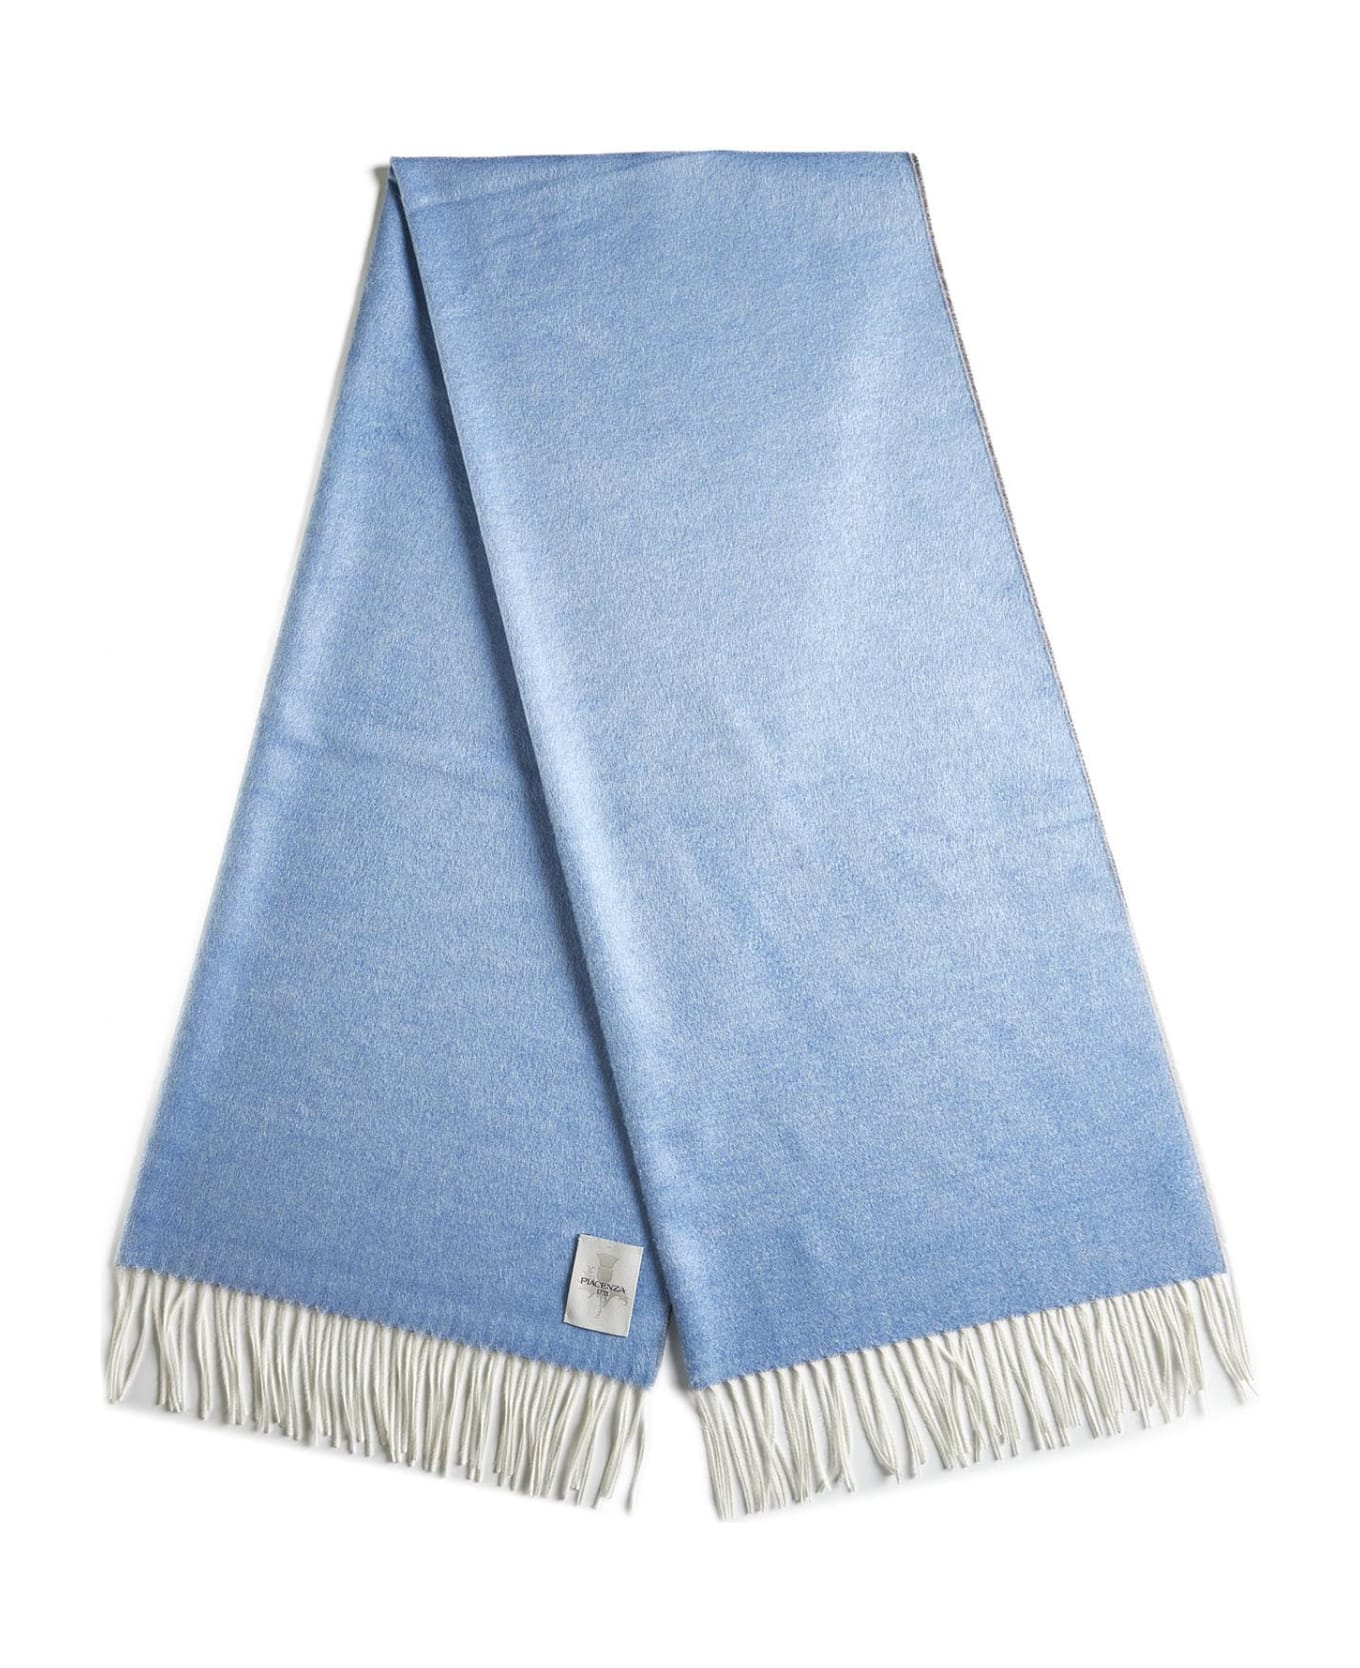 Piacenza Cashmere Scarf - Lt blue / beige スカーフ